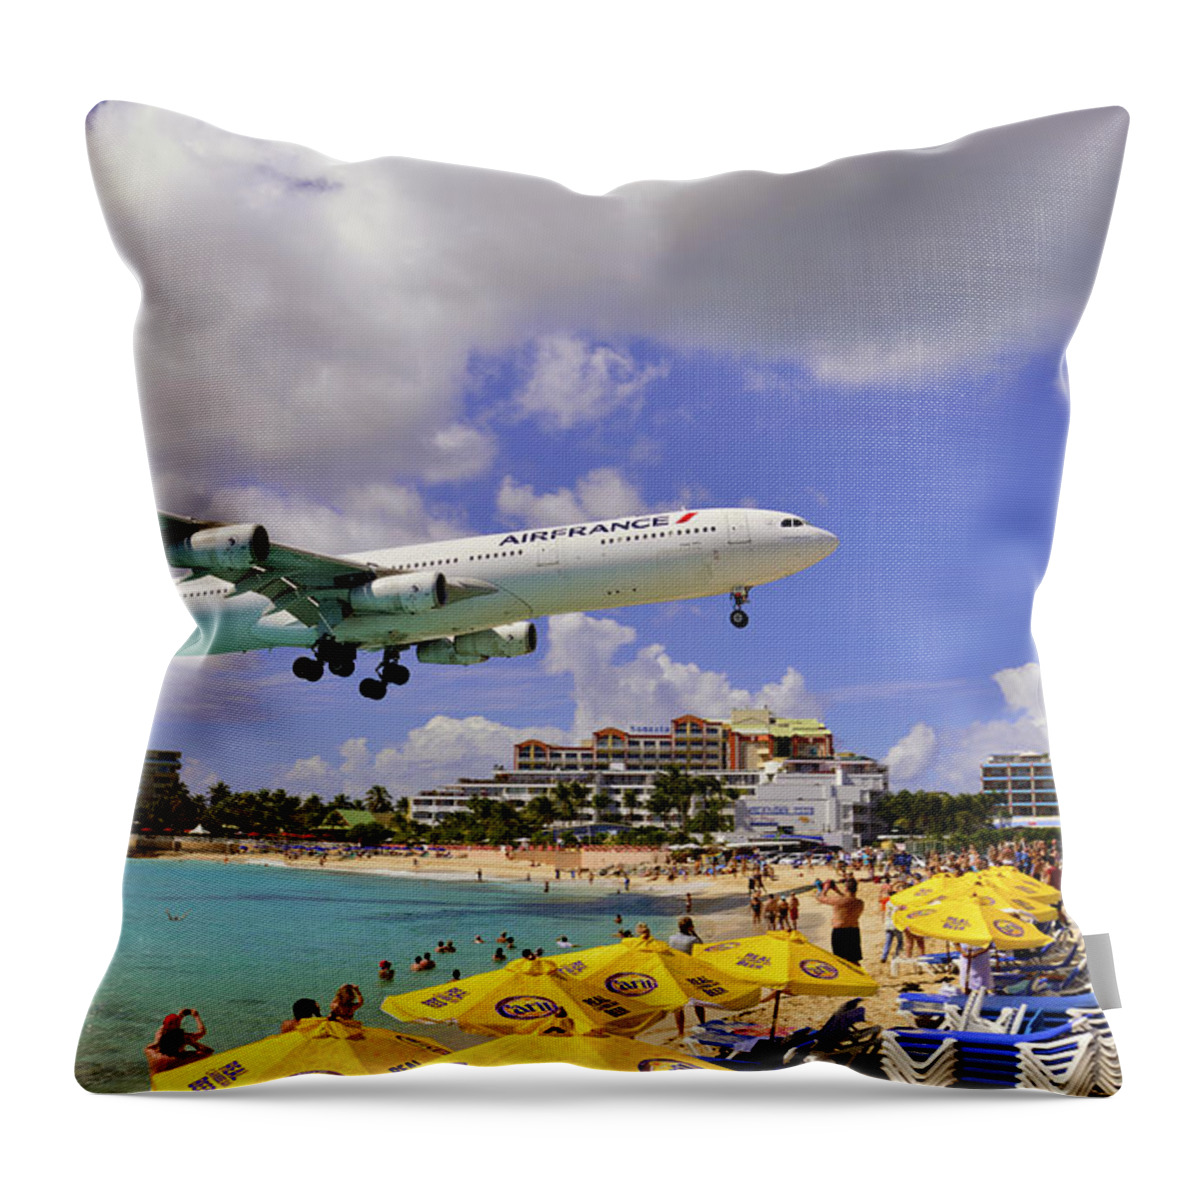 St Martin Throw Pillow featuring the photograph Air France Landing at St Maarten by Matt Swinden